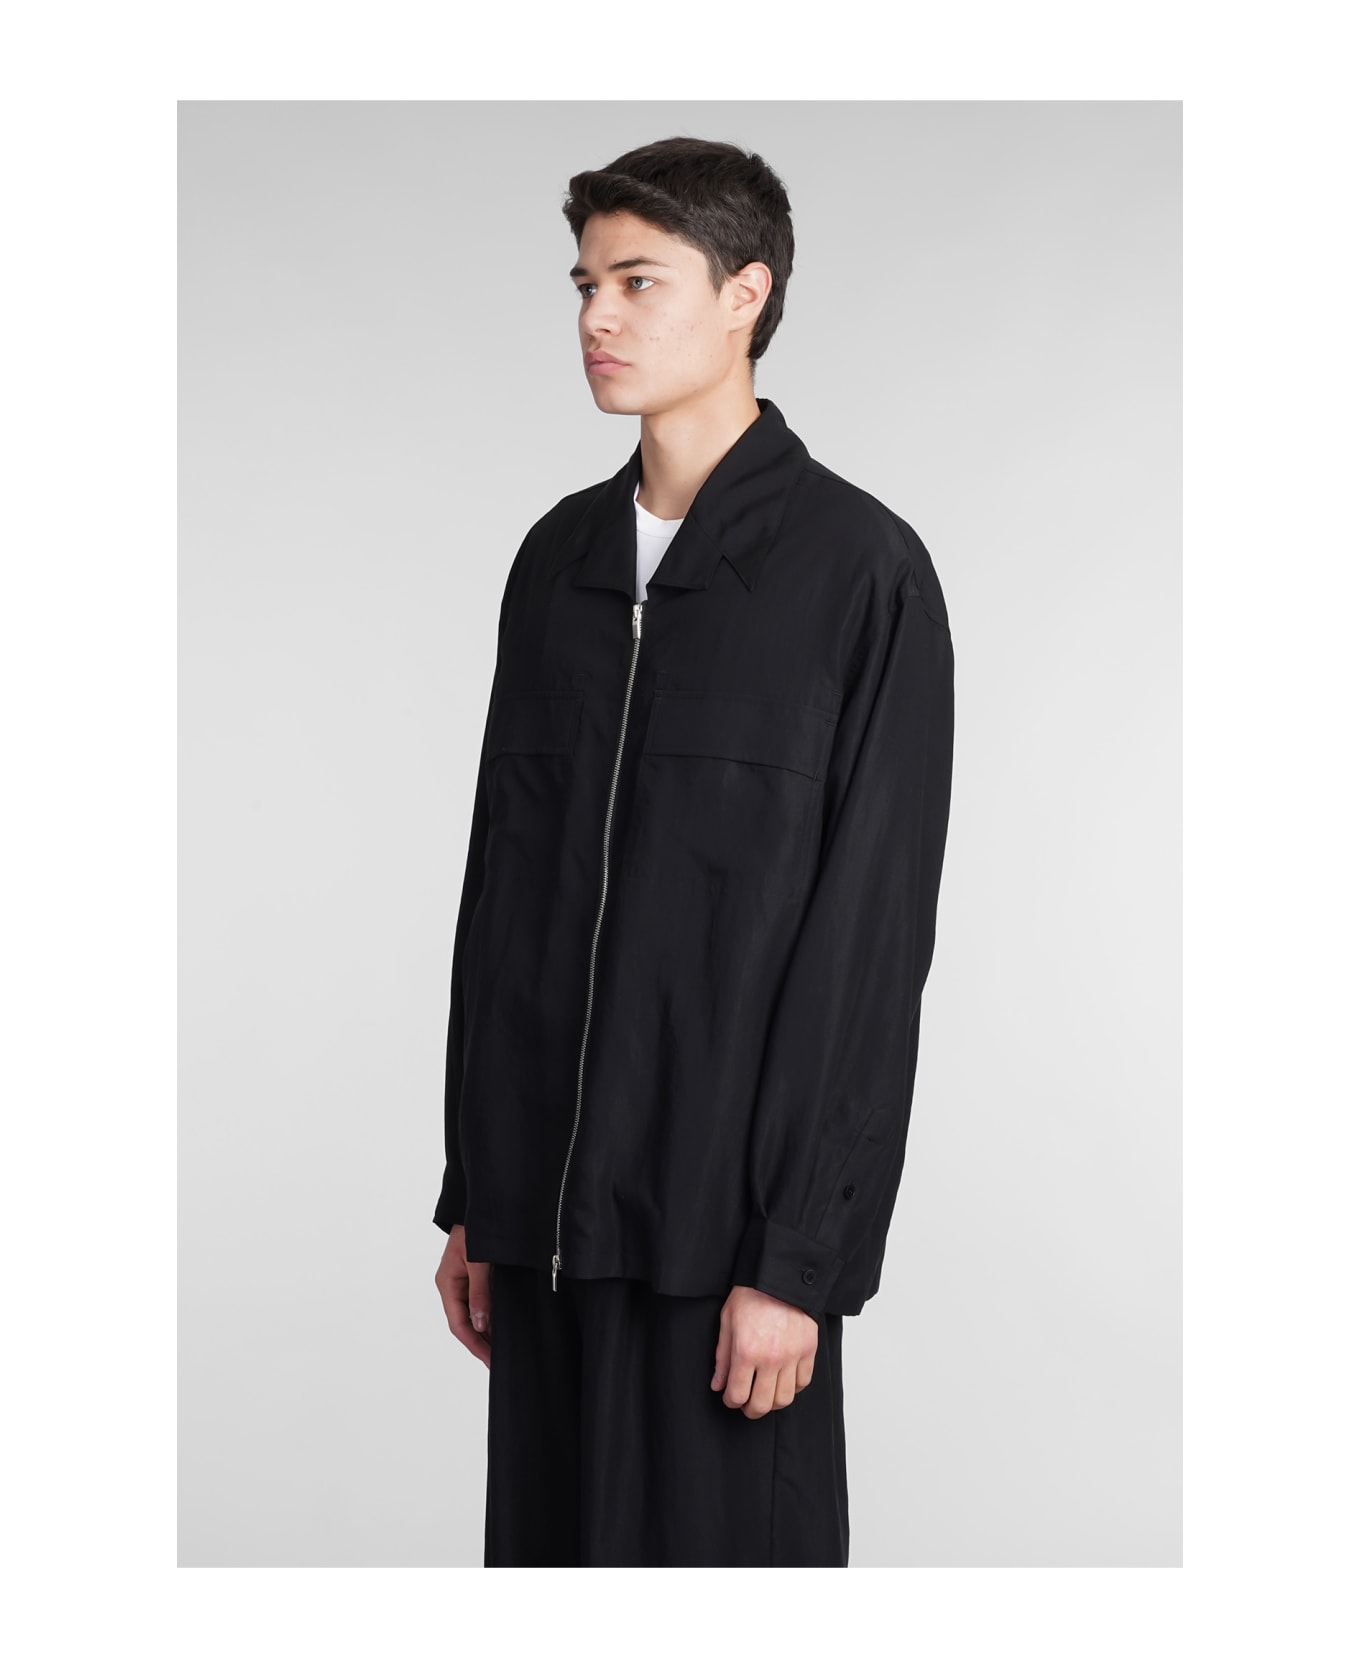 Attachment Casual Jacket In Black Nylon - black